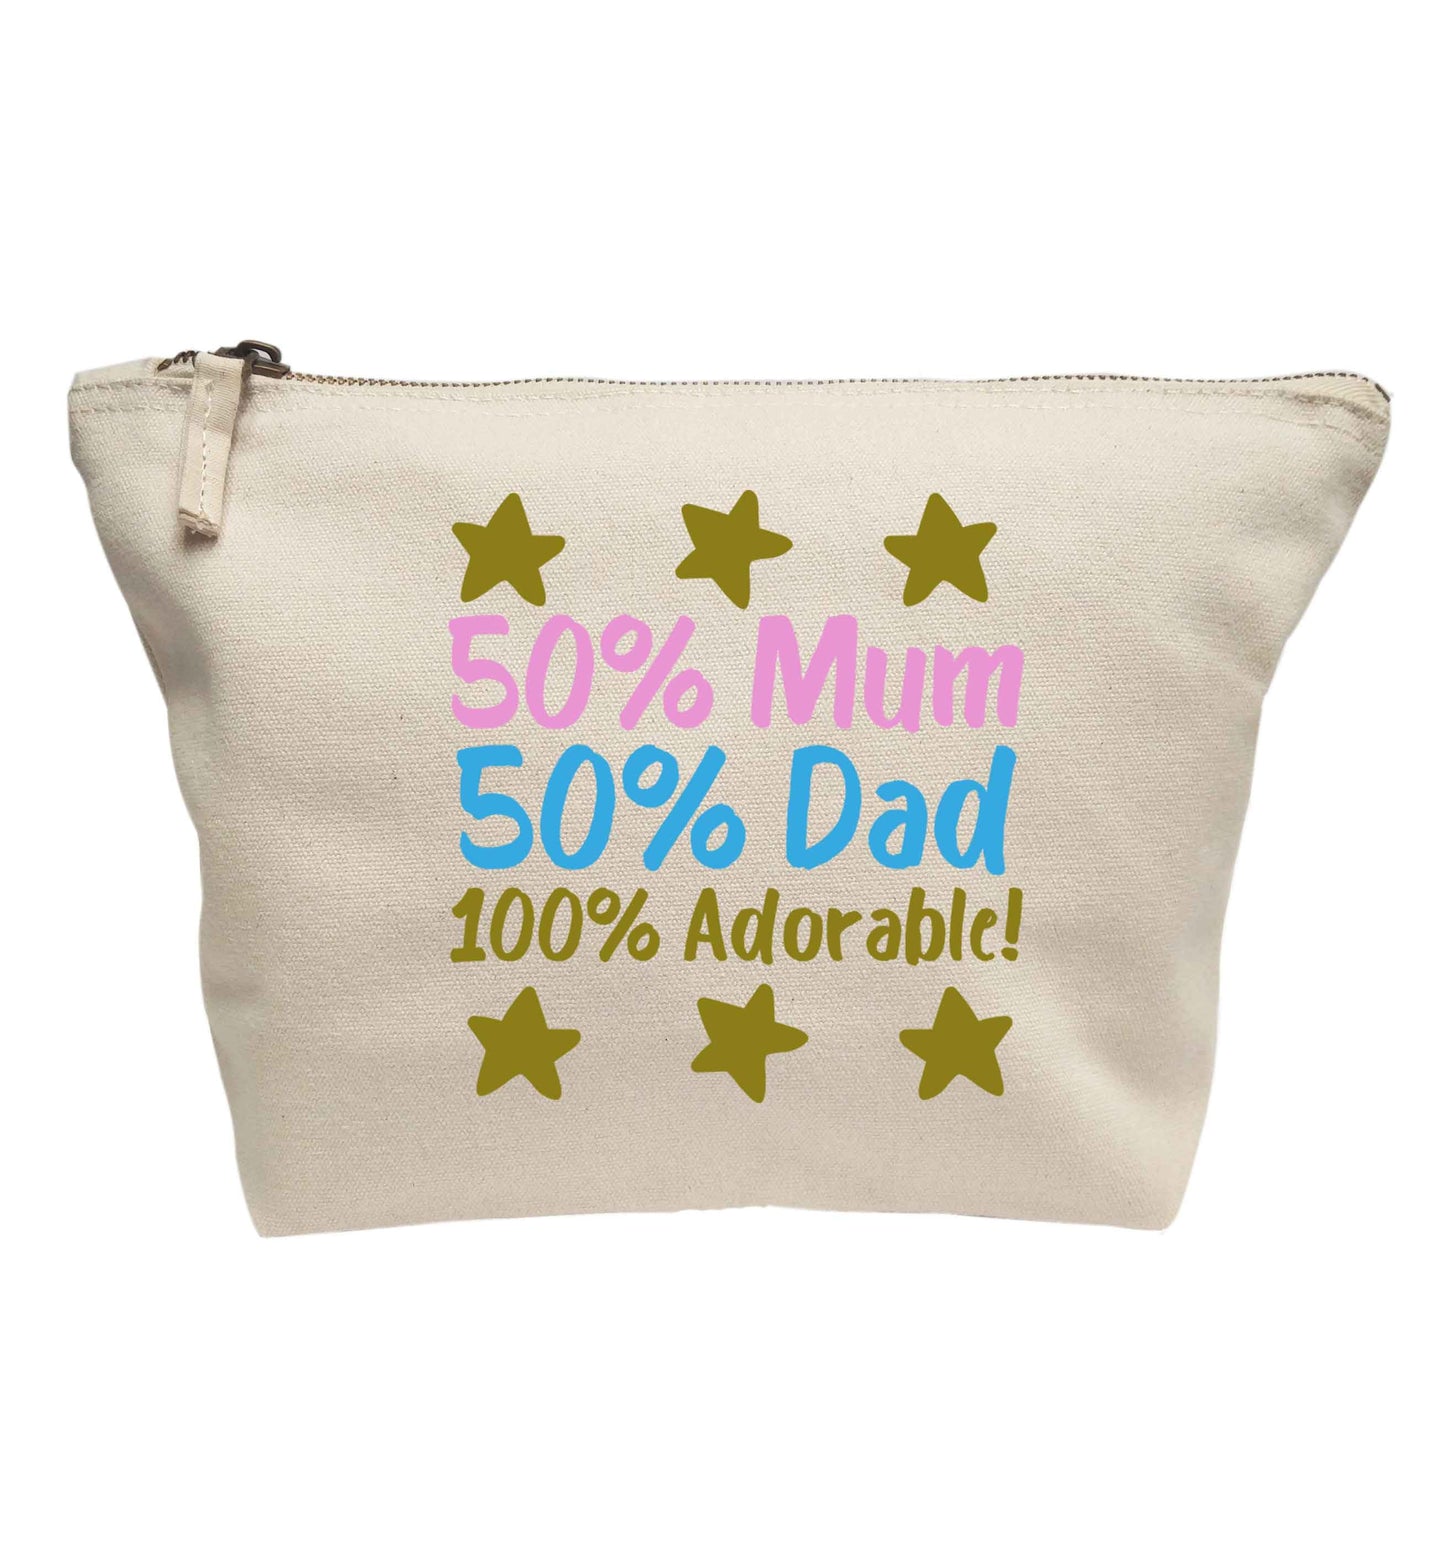 50% mum 50% dad 100% adorable | Makeup / wash bag